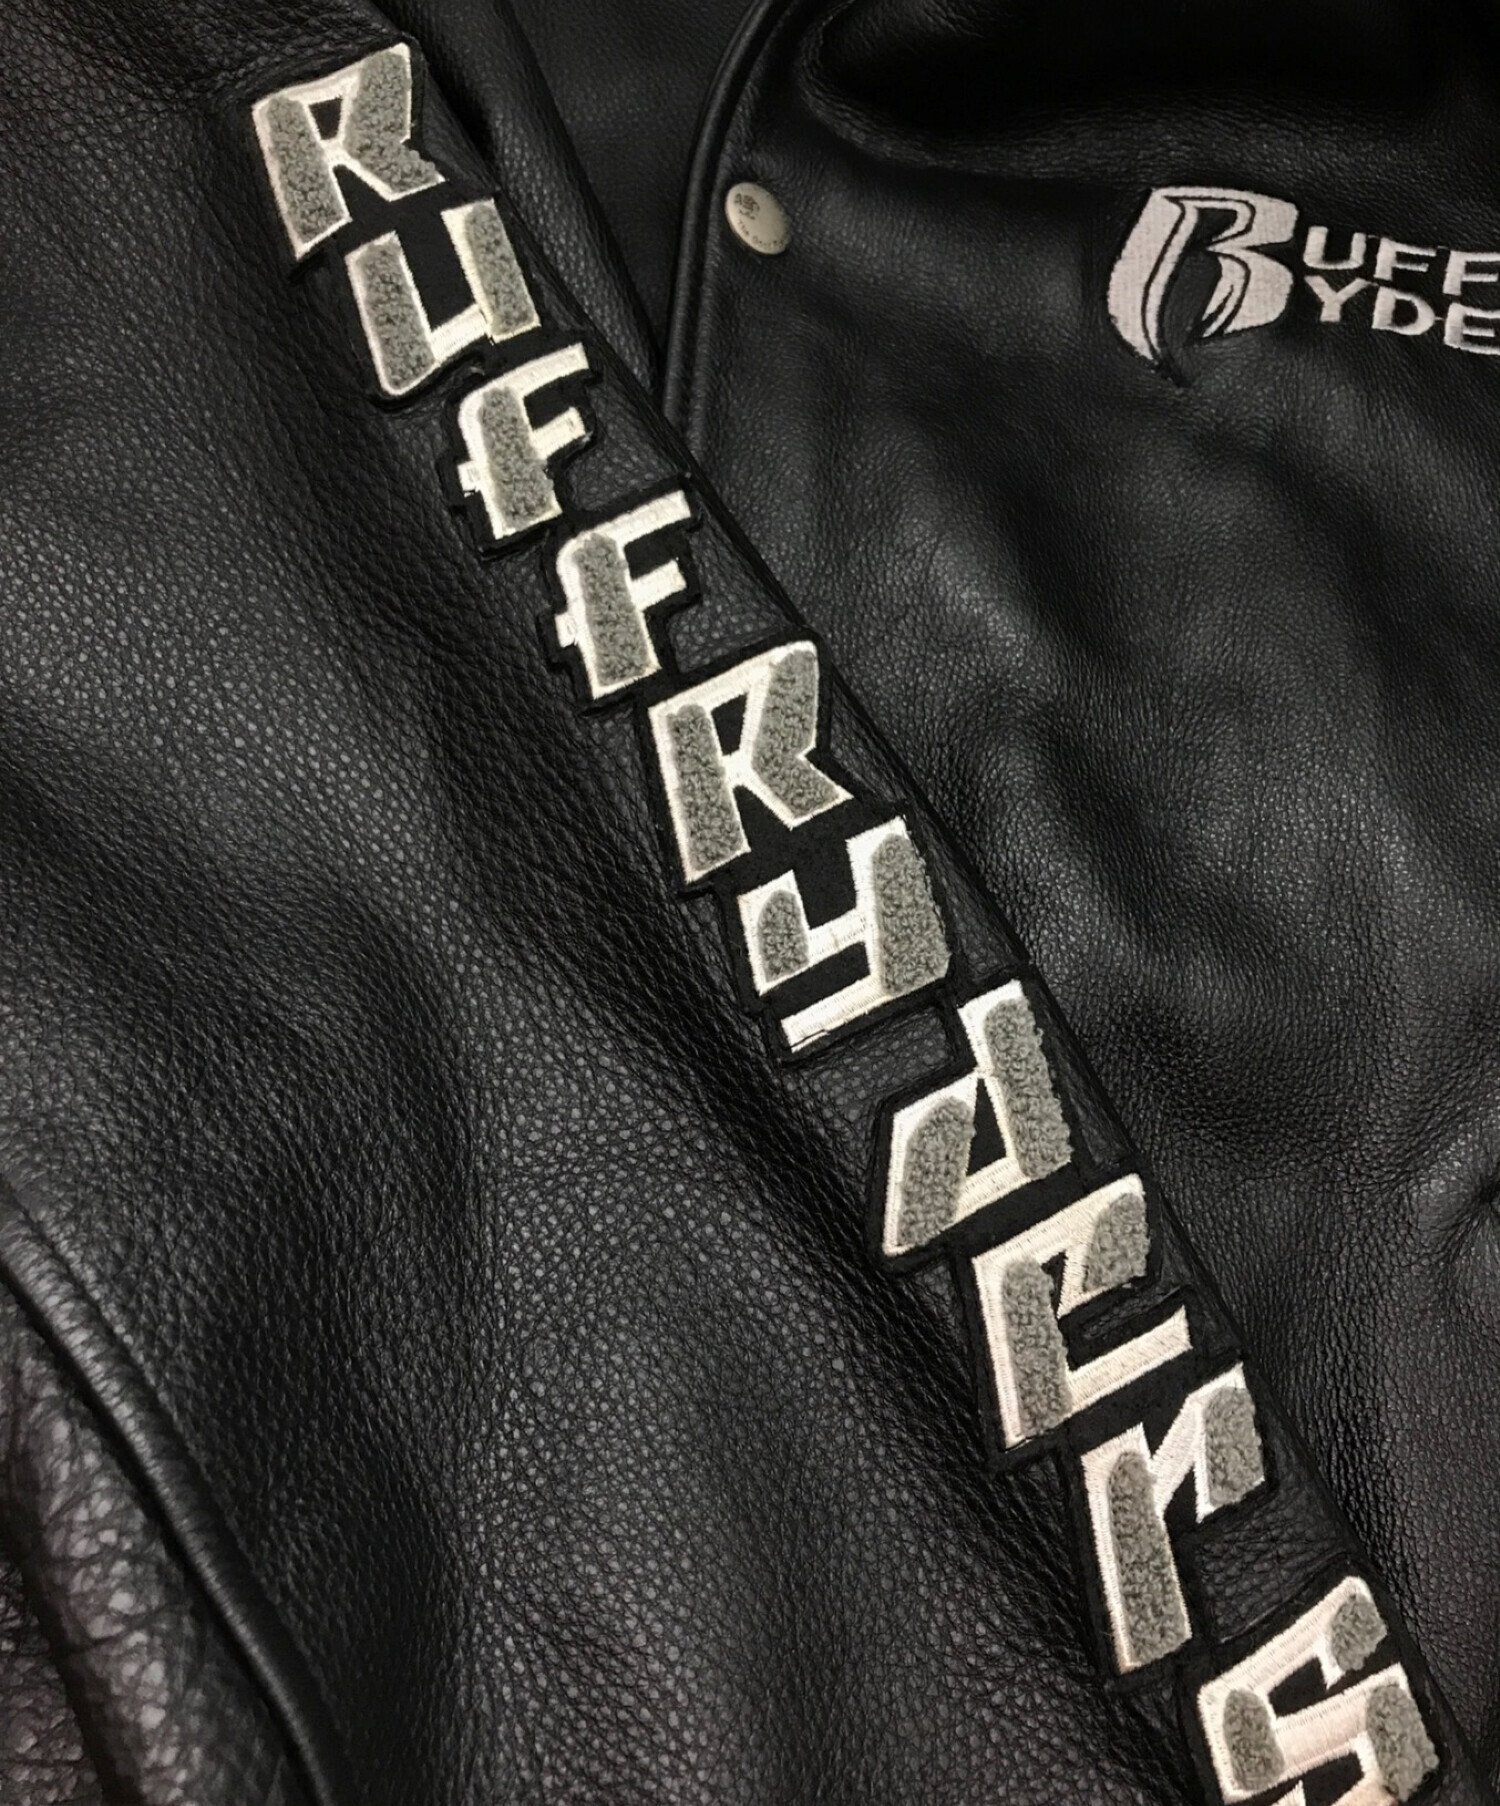 Ruff ryders (ラフ・ライダーズ) ライダースジャケット / レザージャケット ブラック サイズ:4Ｘ